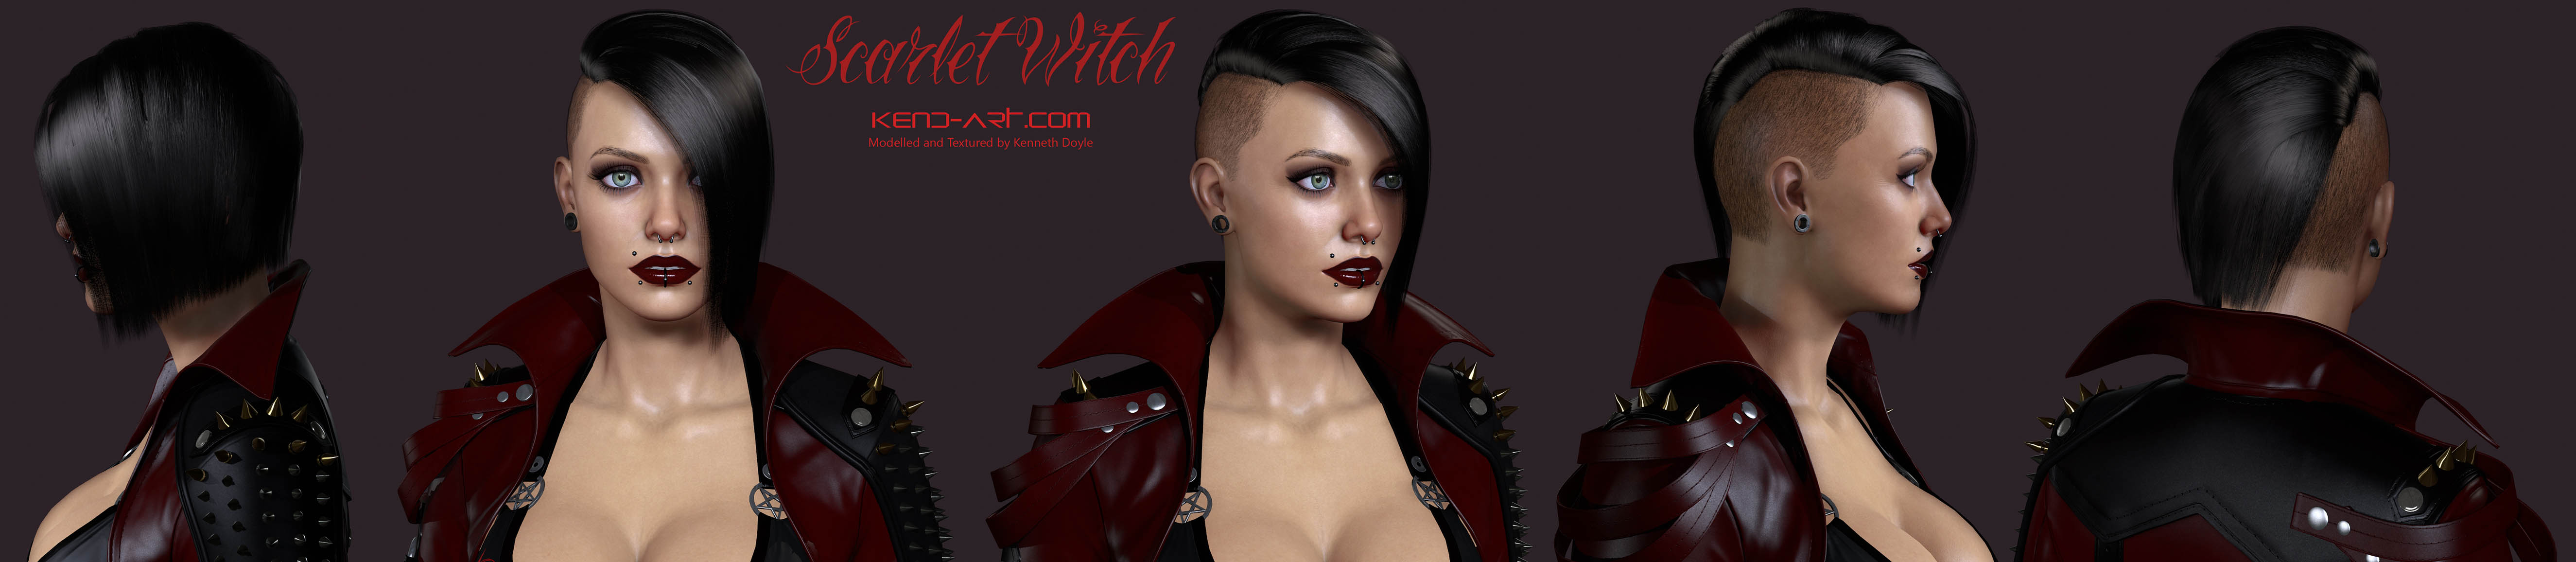 Scarlet Witch3ZBC.jpg